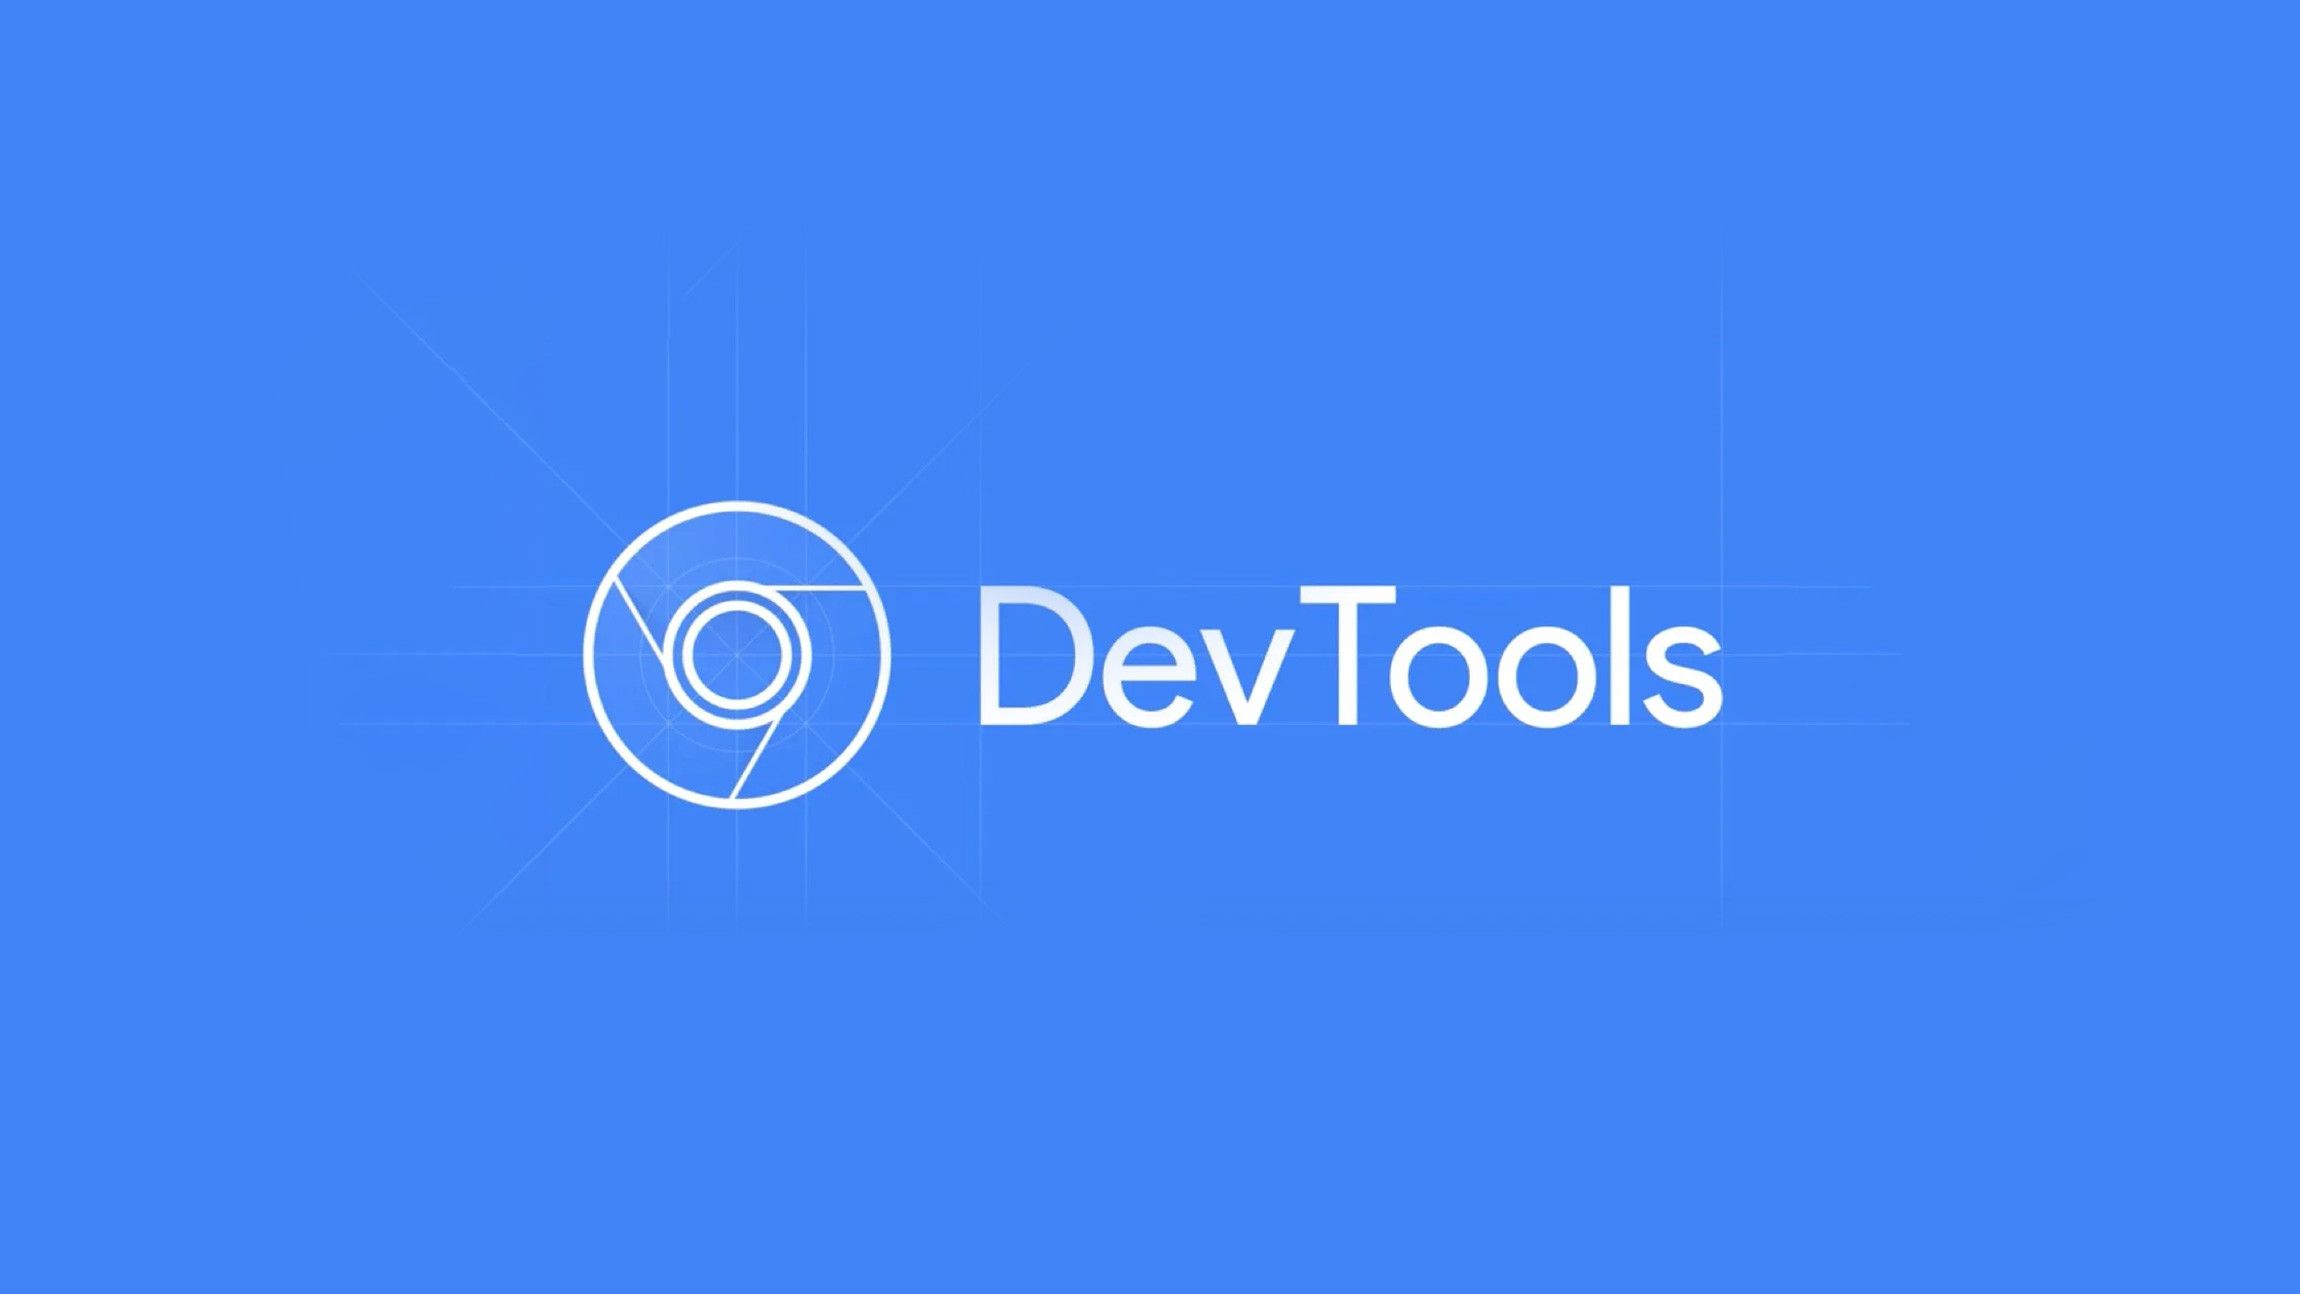 Chrome Devtools logo